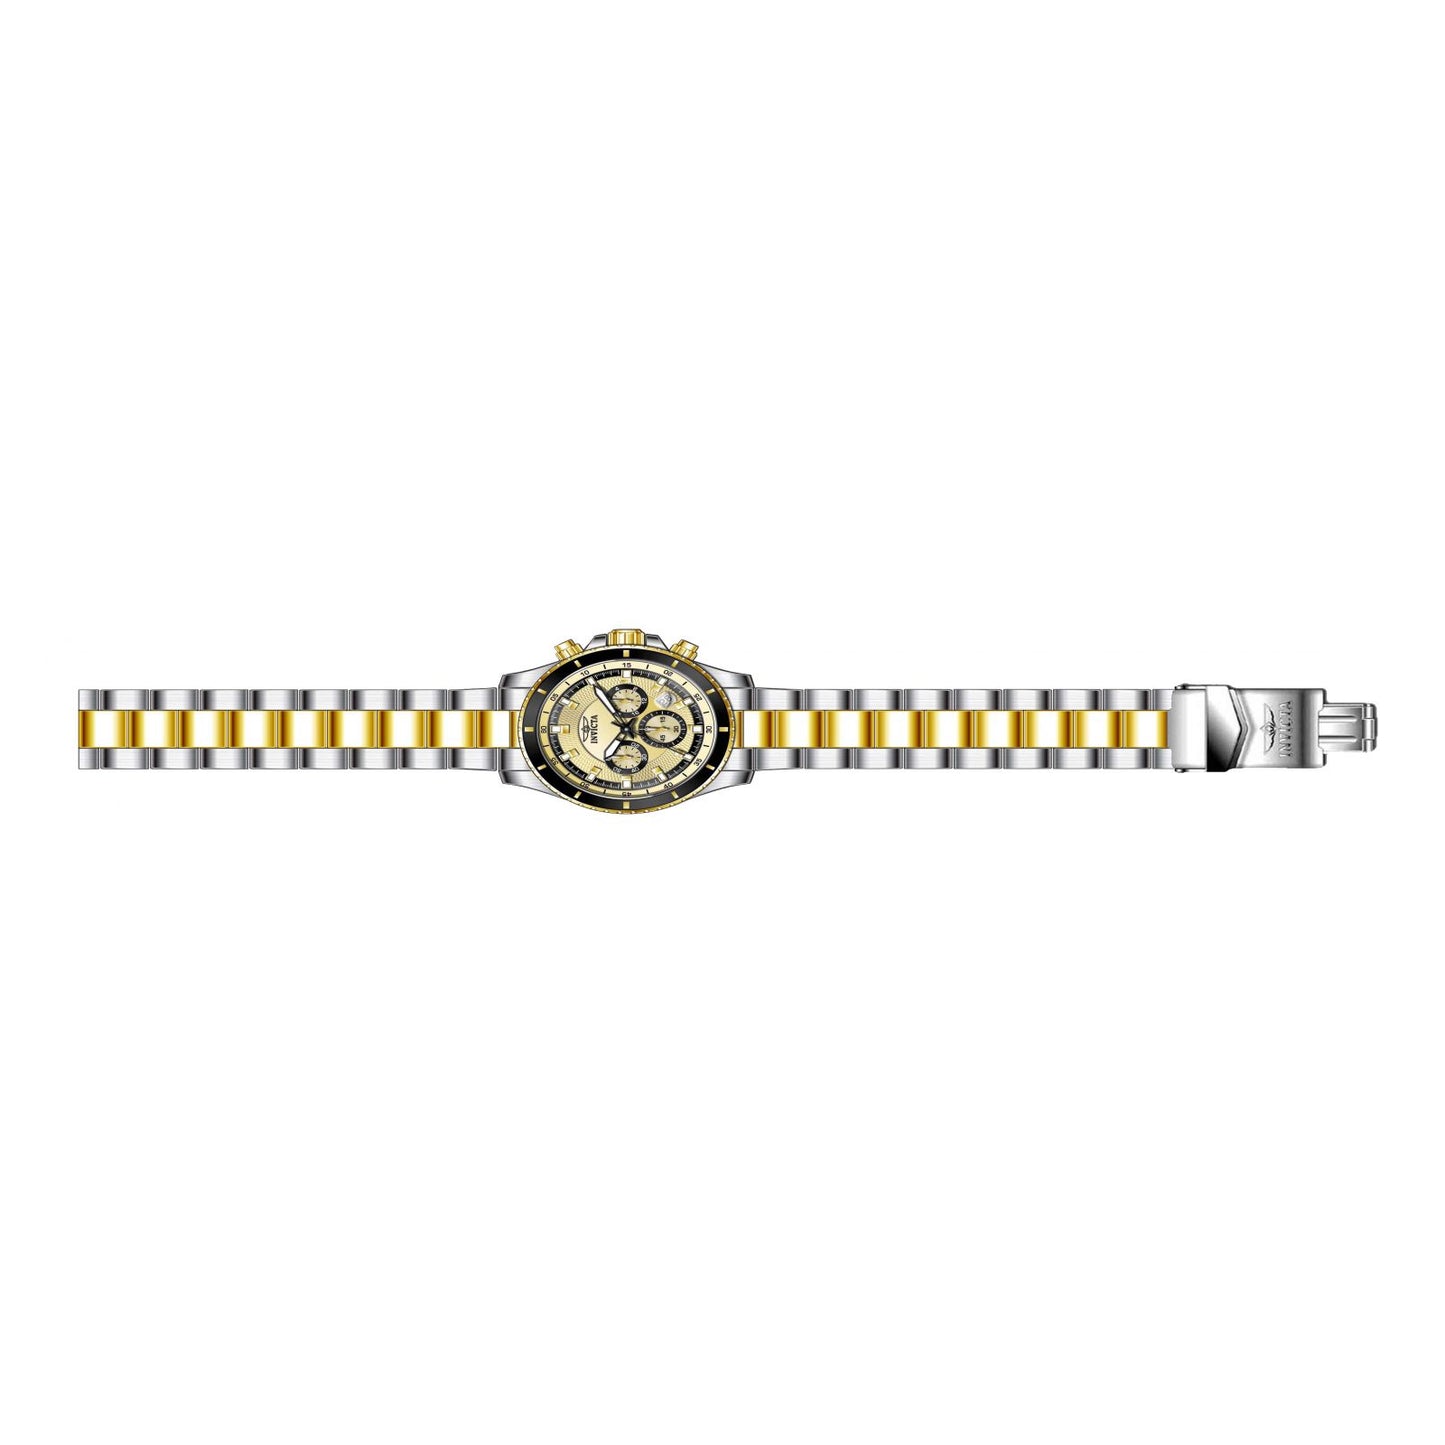 Reloj Invicta Pro Diver 12456